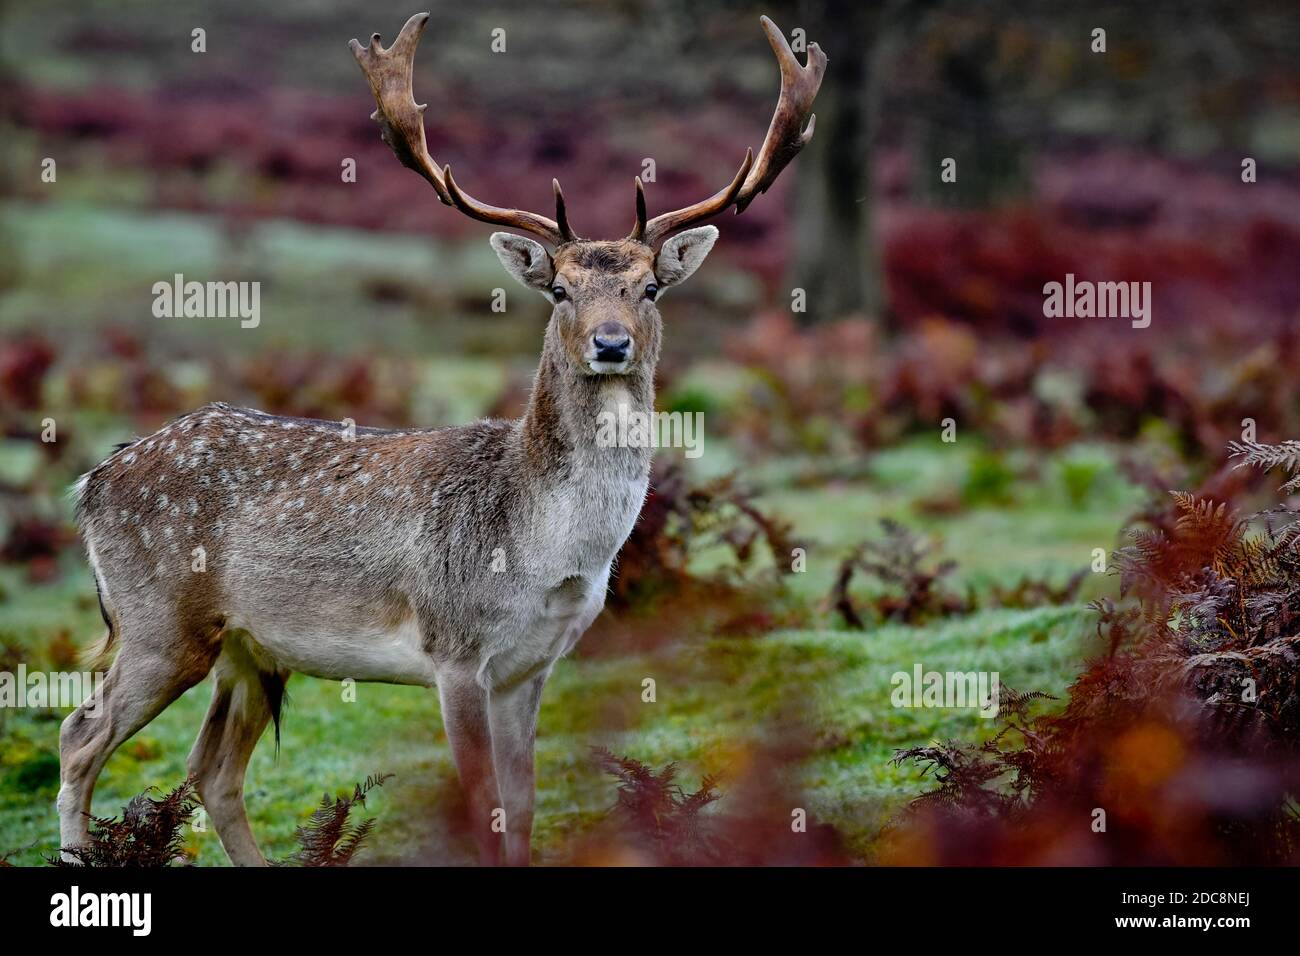 Une belle photo d'un majestueux cerf à gros cornes qui regarde la caméra dans un champ herbacé Banque D'Images